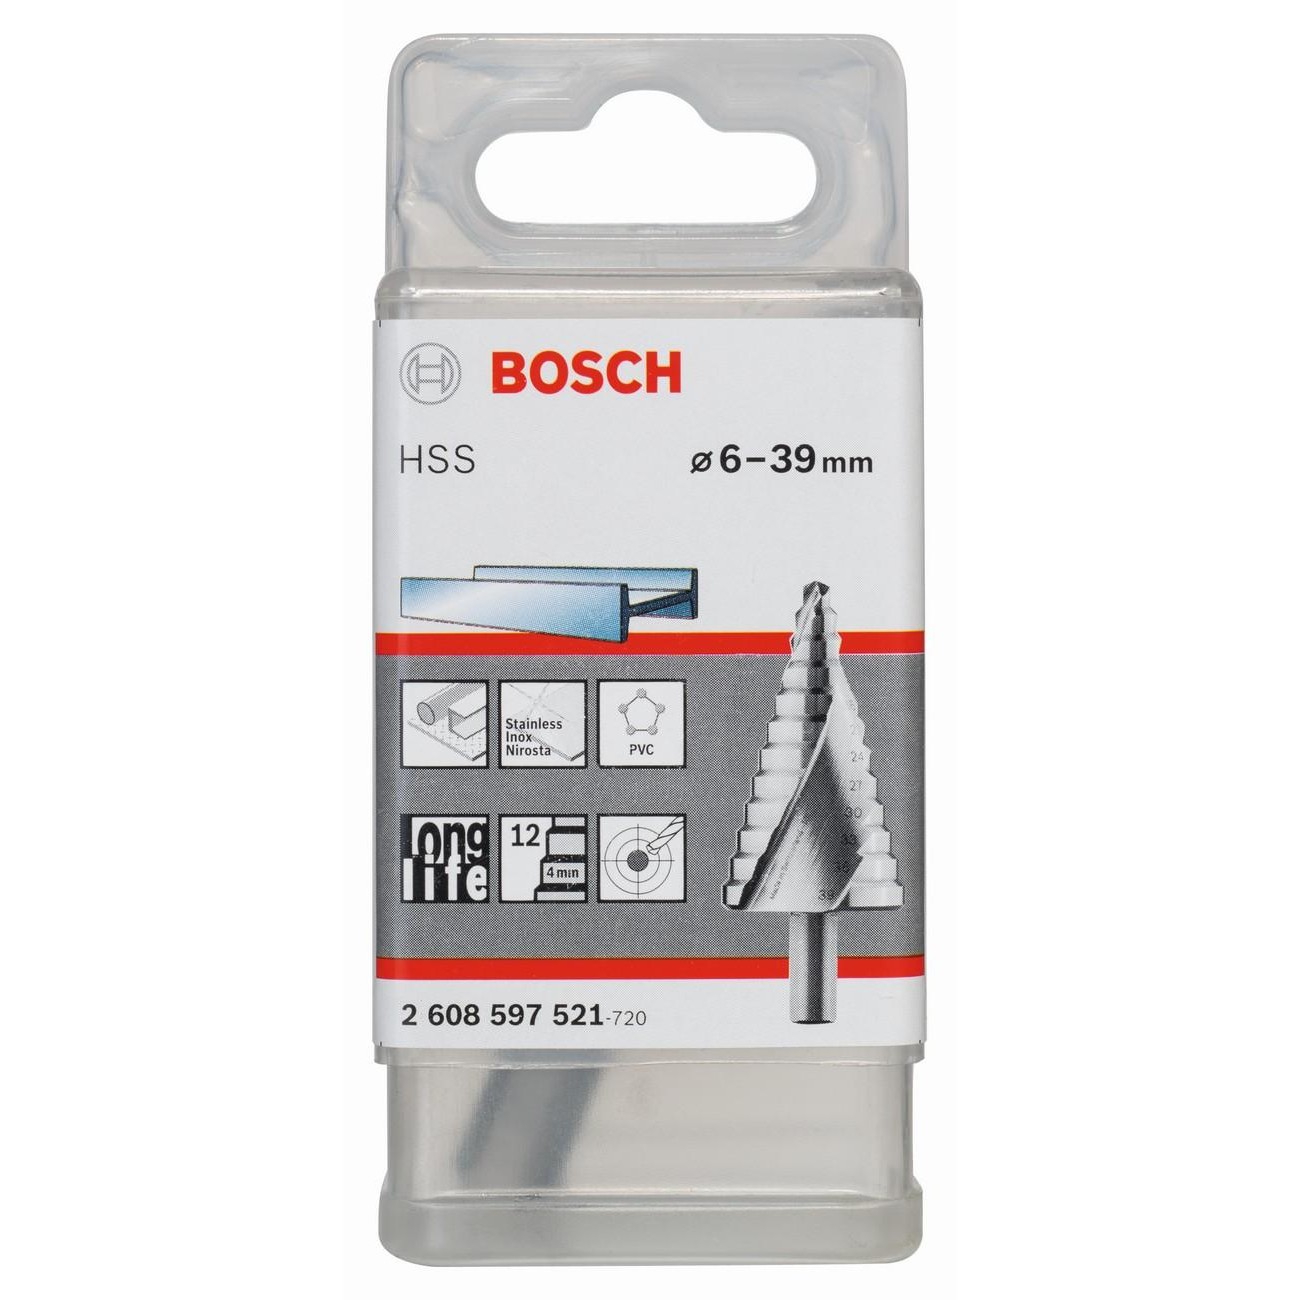 BOSCH Professional HSS Стъпаловидно свредло 6-39 мм 10 мм 93.5 мм (2608597521)